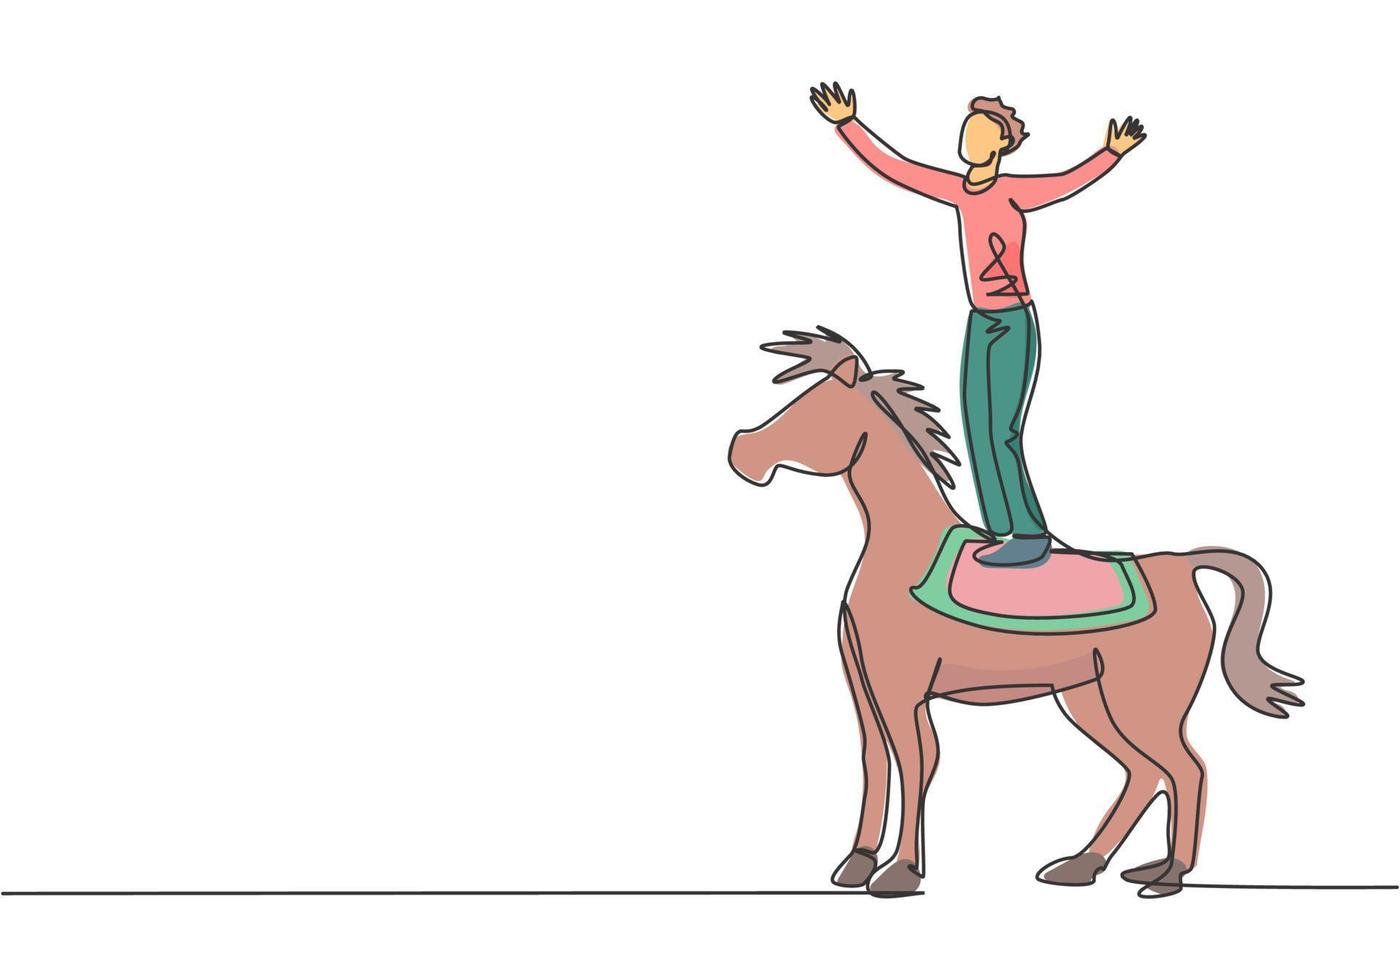 dibujo de una sola línea continua Un acróbata macho realiza una acrobacia en un caballo de circo colocándose sobre el lomo del caballo y levantando las manos. Ilustración de vector de diseño gráfico de dibujo dinámico de una línea.